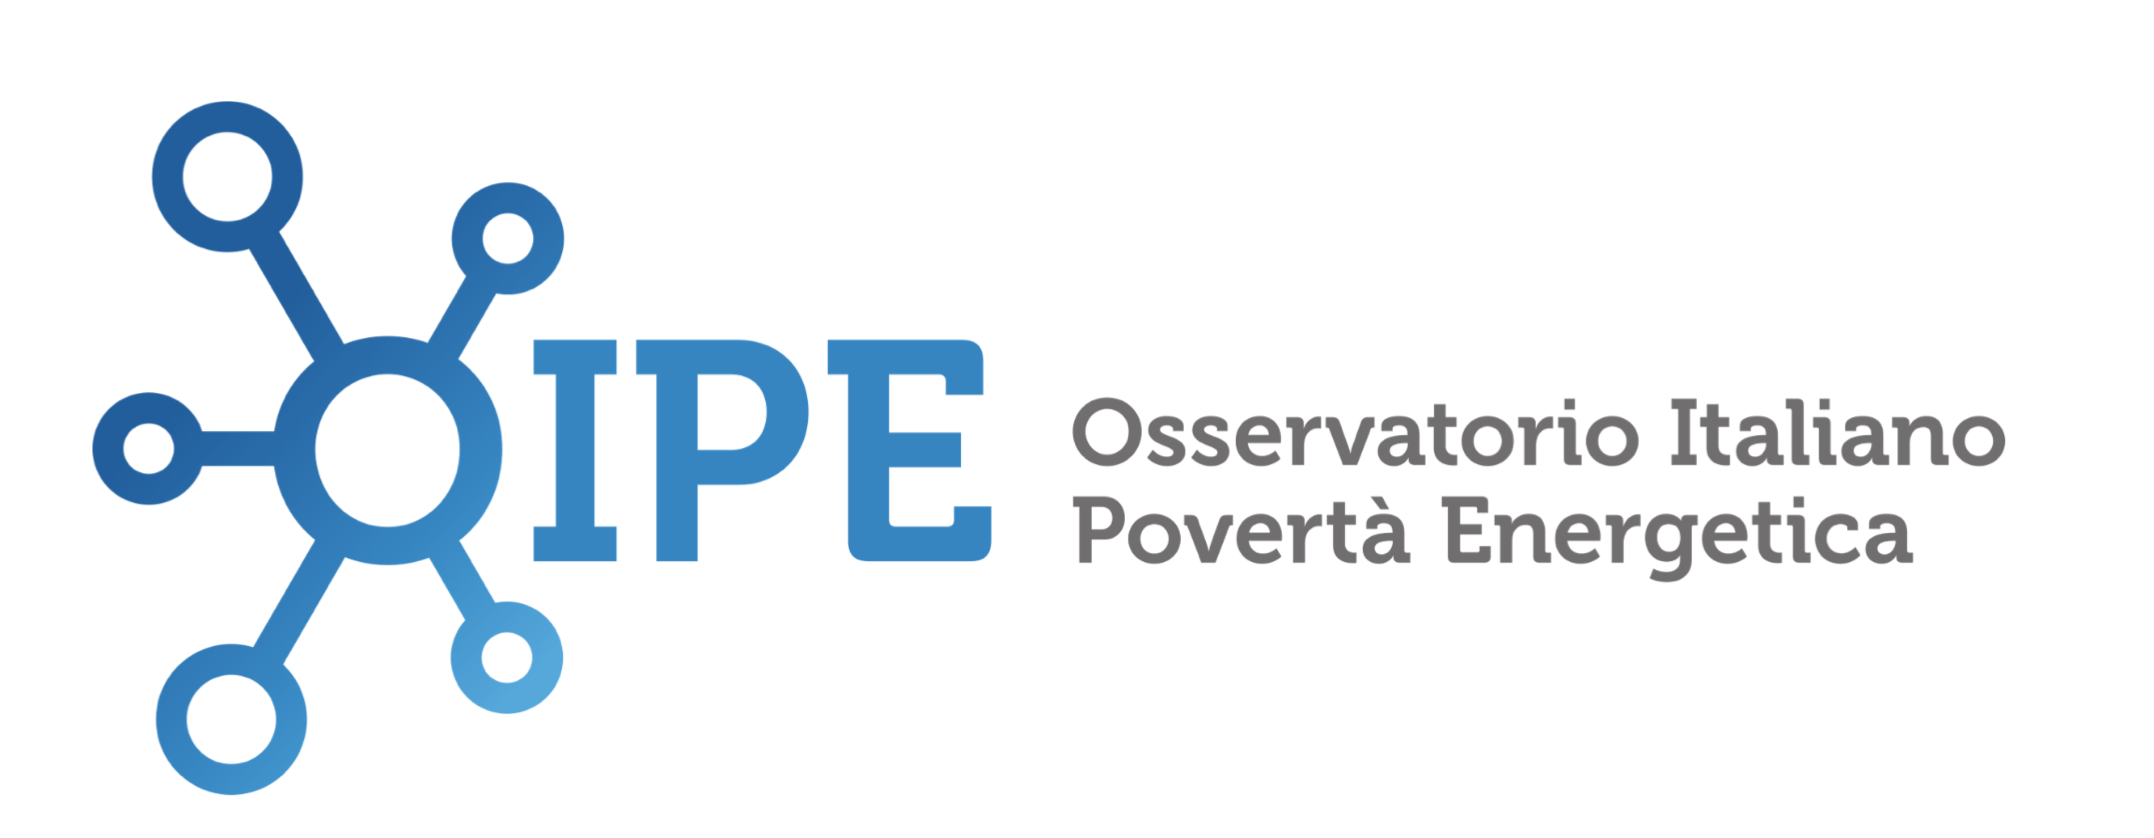 Logo OIPE Osservatorio Italiano Povertà energetica